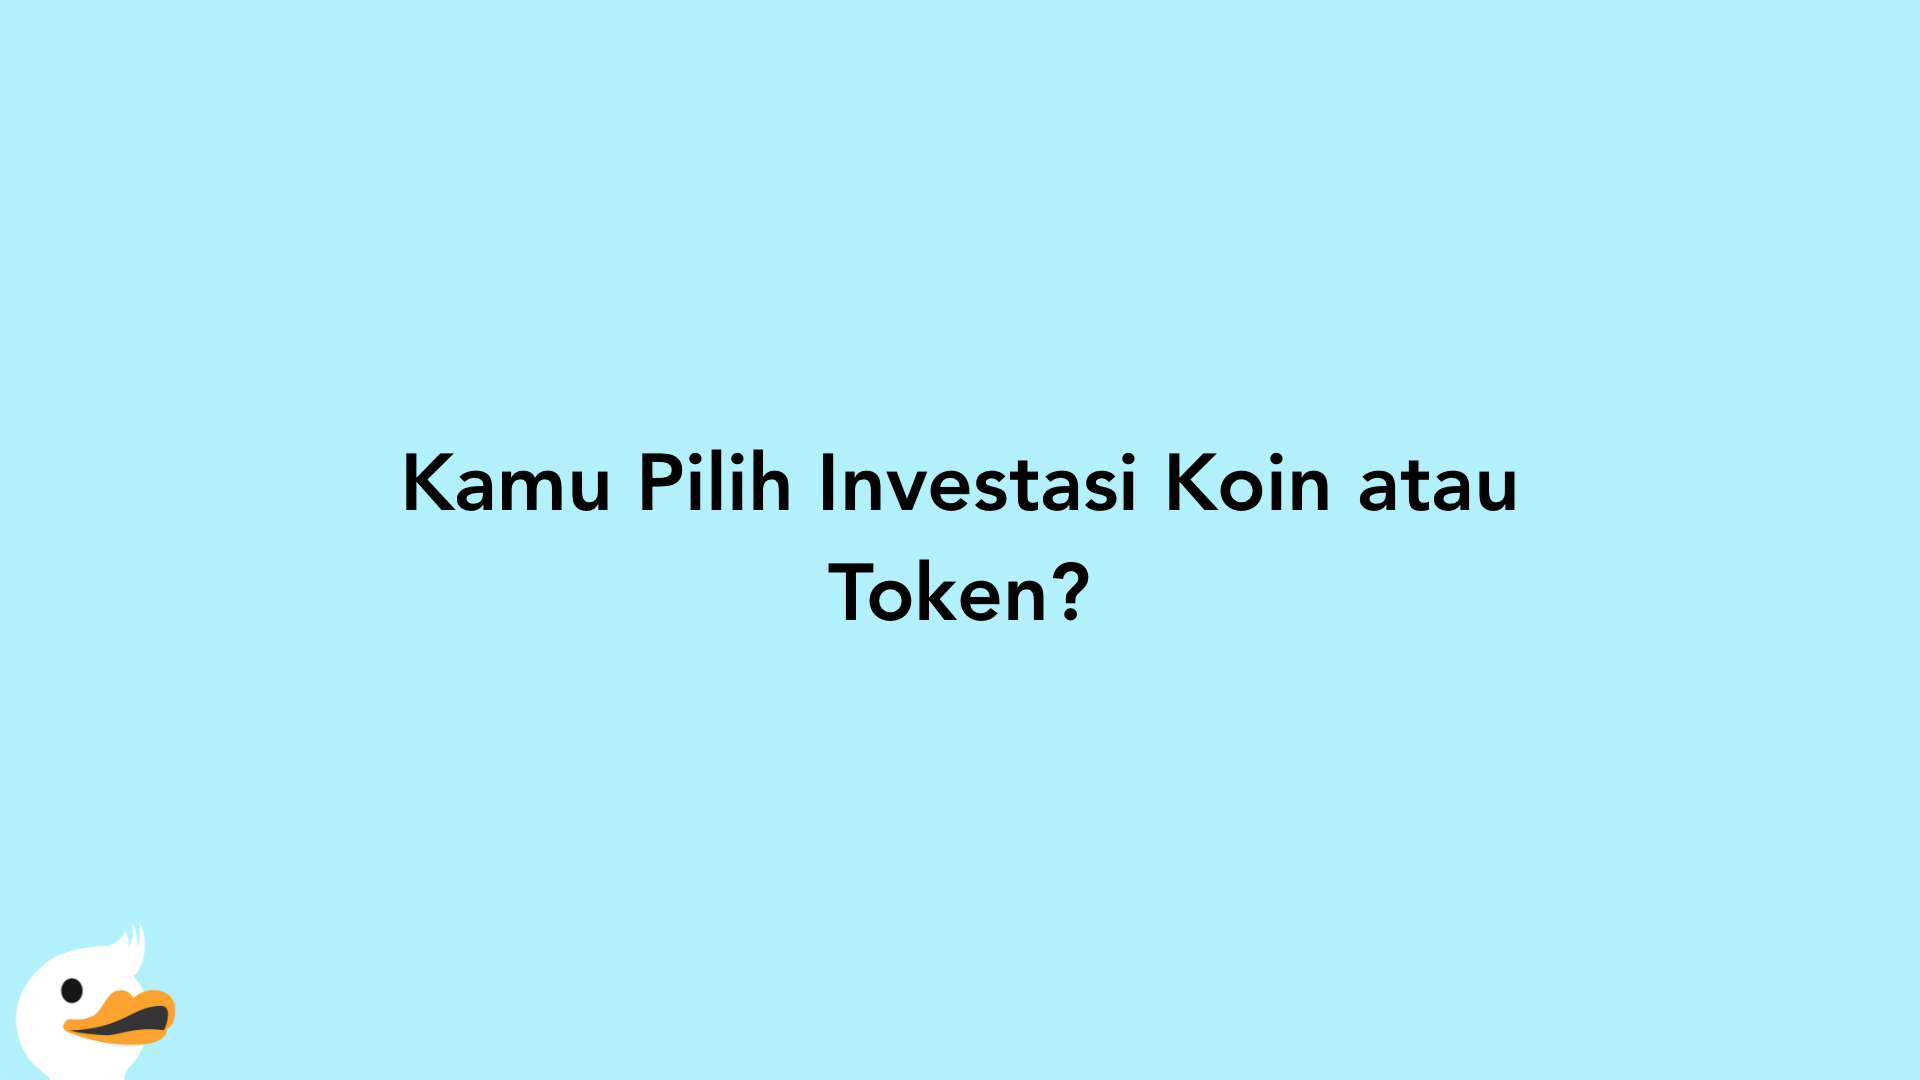 Kamu Pilih Investasi Koin atau Token?